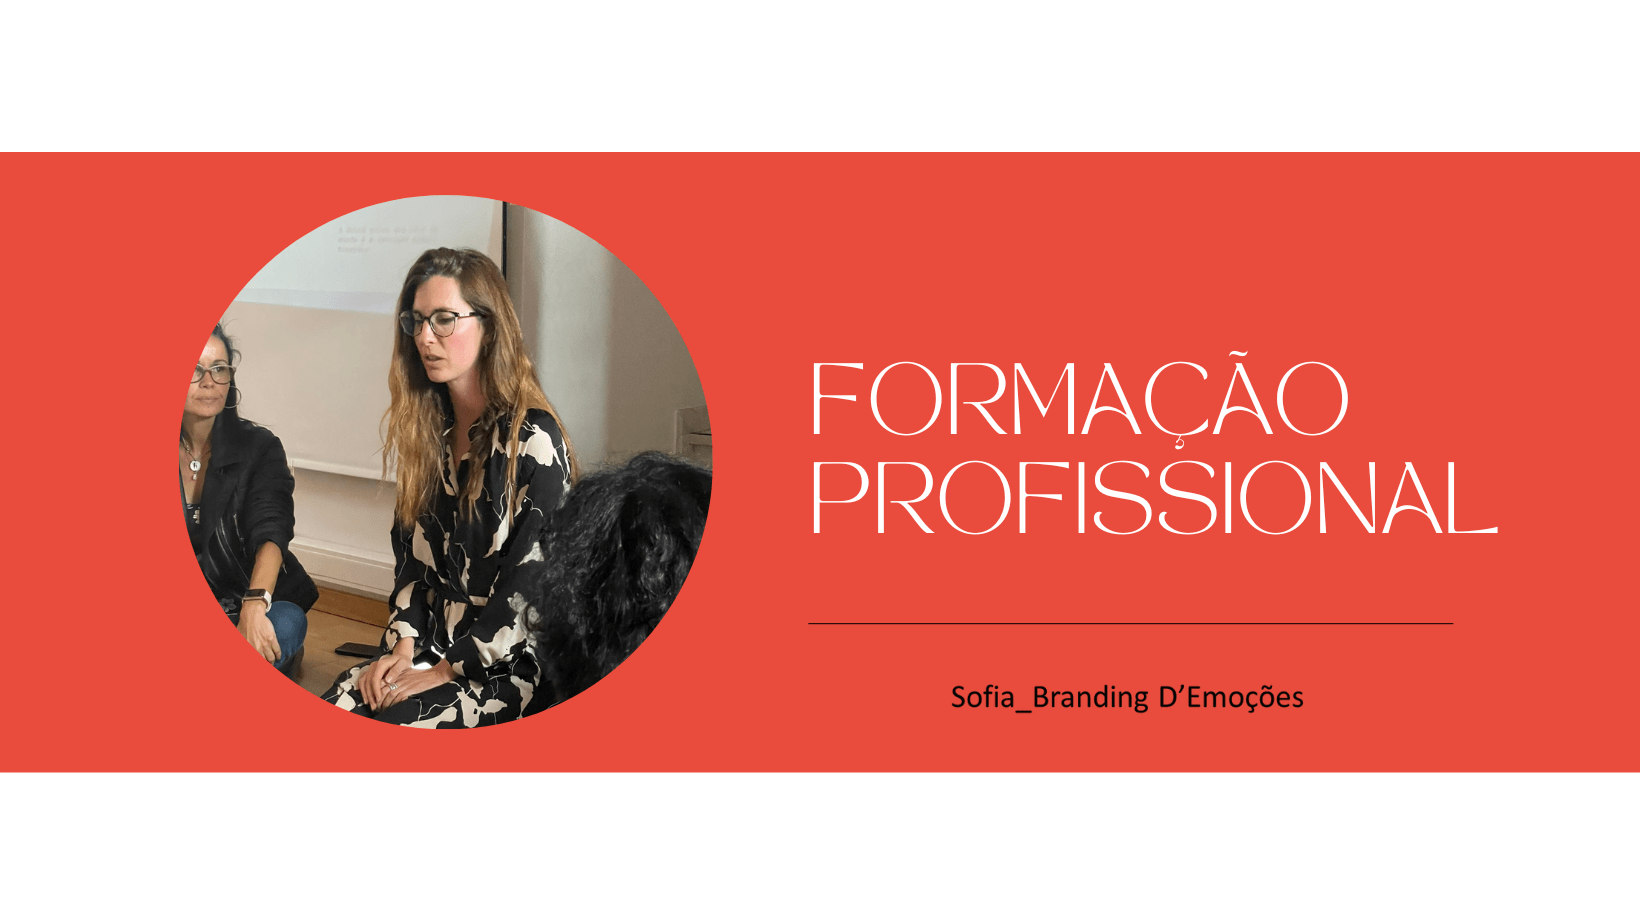 Sofia Branding D'Emoções - Formação Profissional